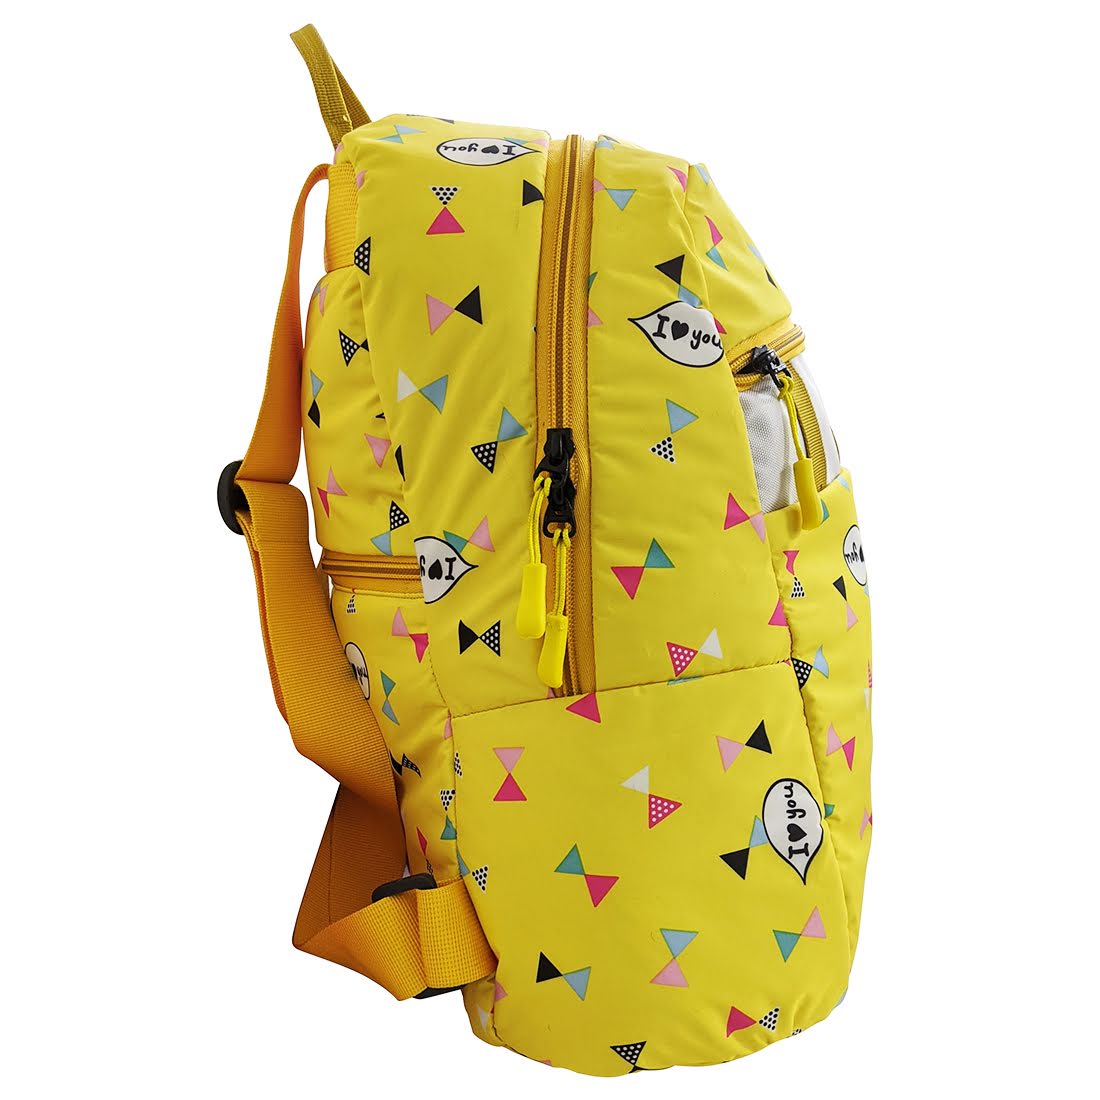 Backpack - Saffron Kites